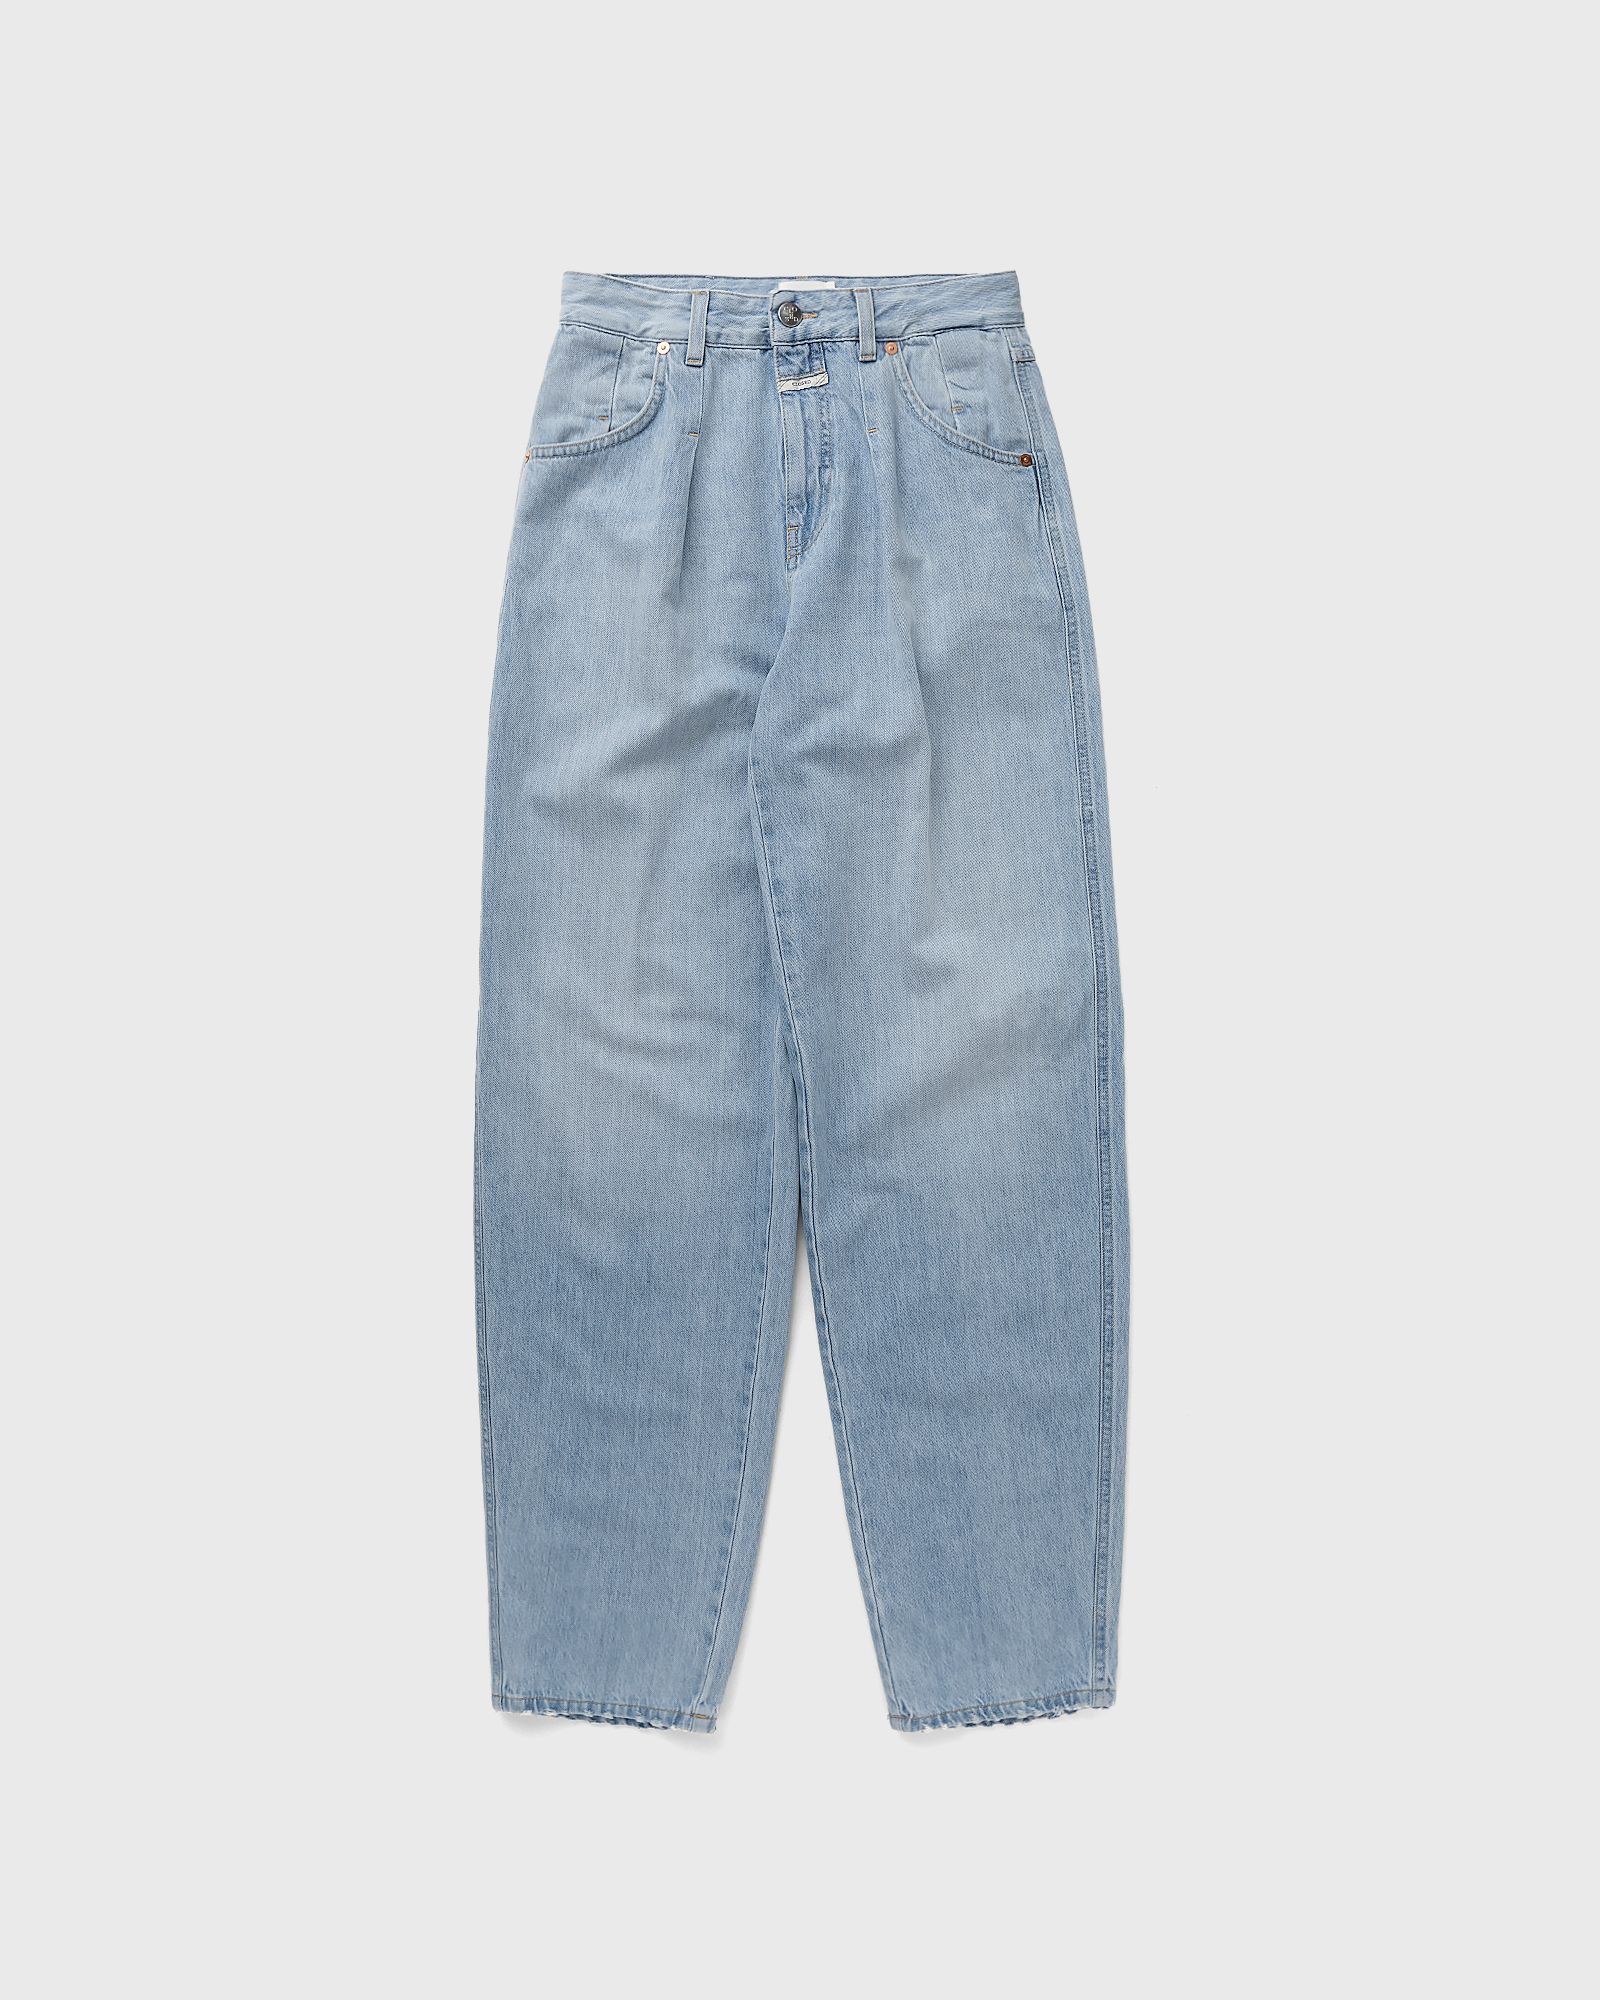 CLOSED - wellington women jeans blue in größe:s